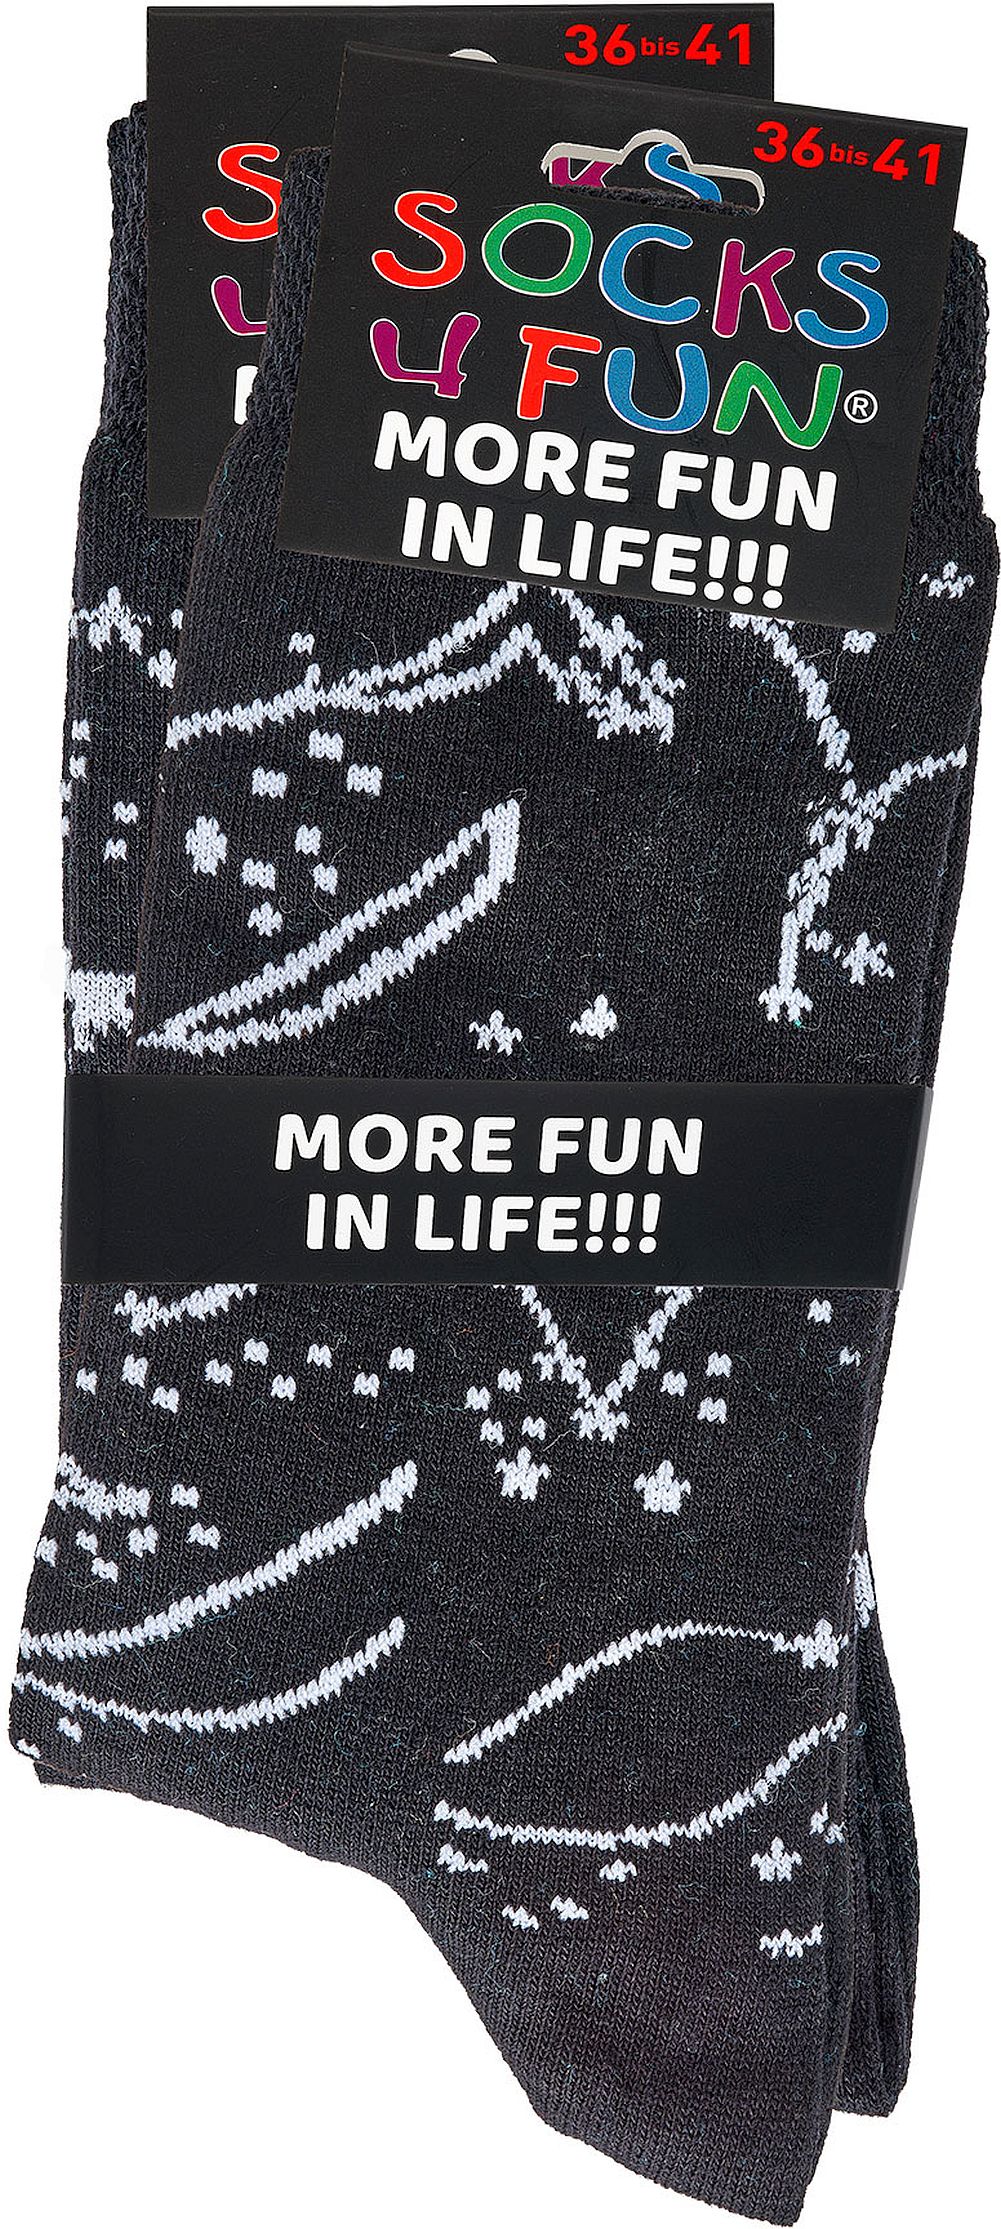 ASTROLOGIE  Witzige Socken Lustige Dessin-SOCKS 4 FUN -Mehr Spaß im Alltag für Teenager-Damen und Herren 2 Paar 